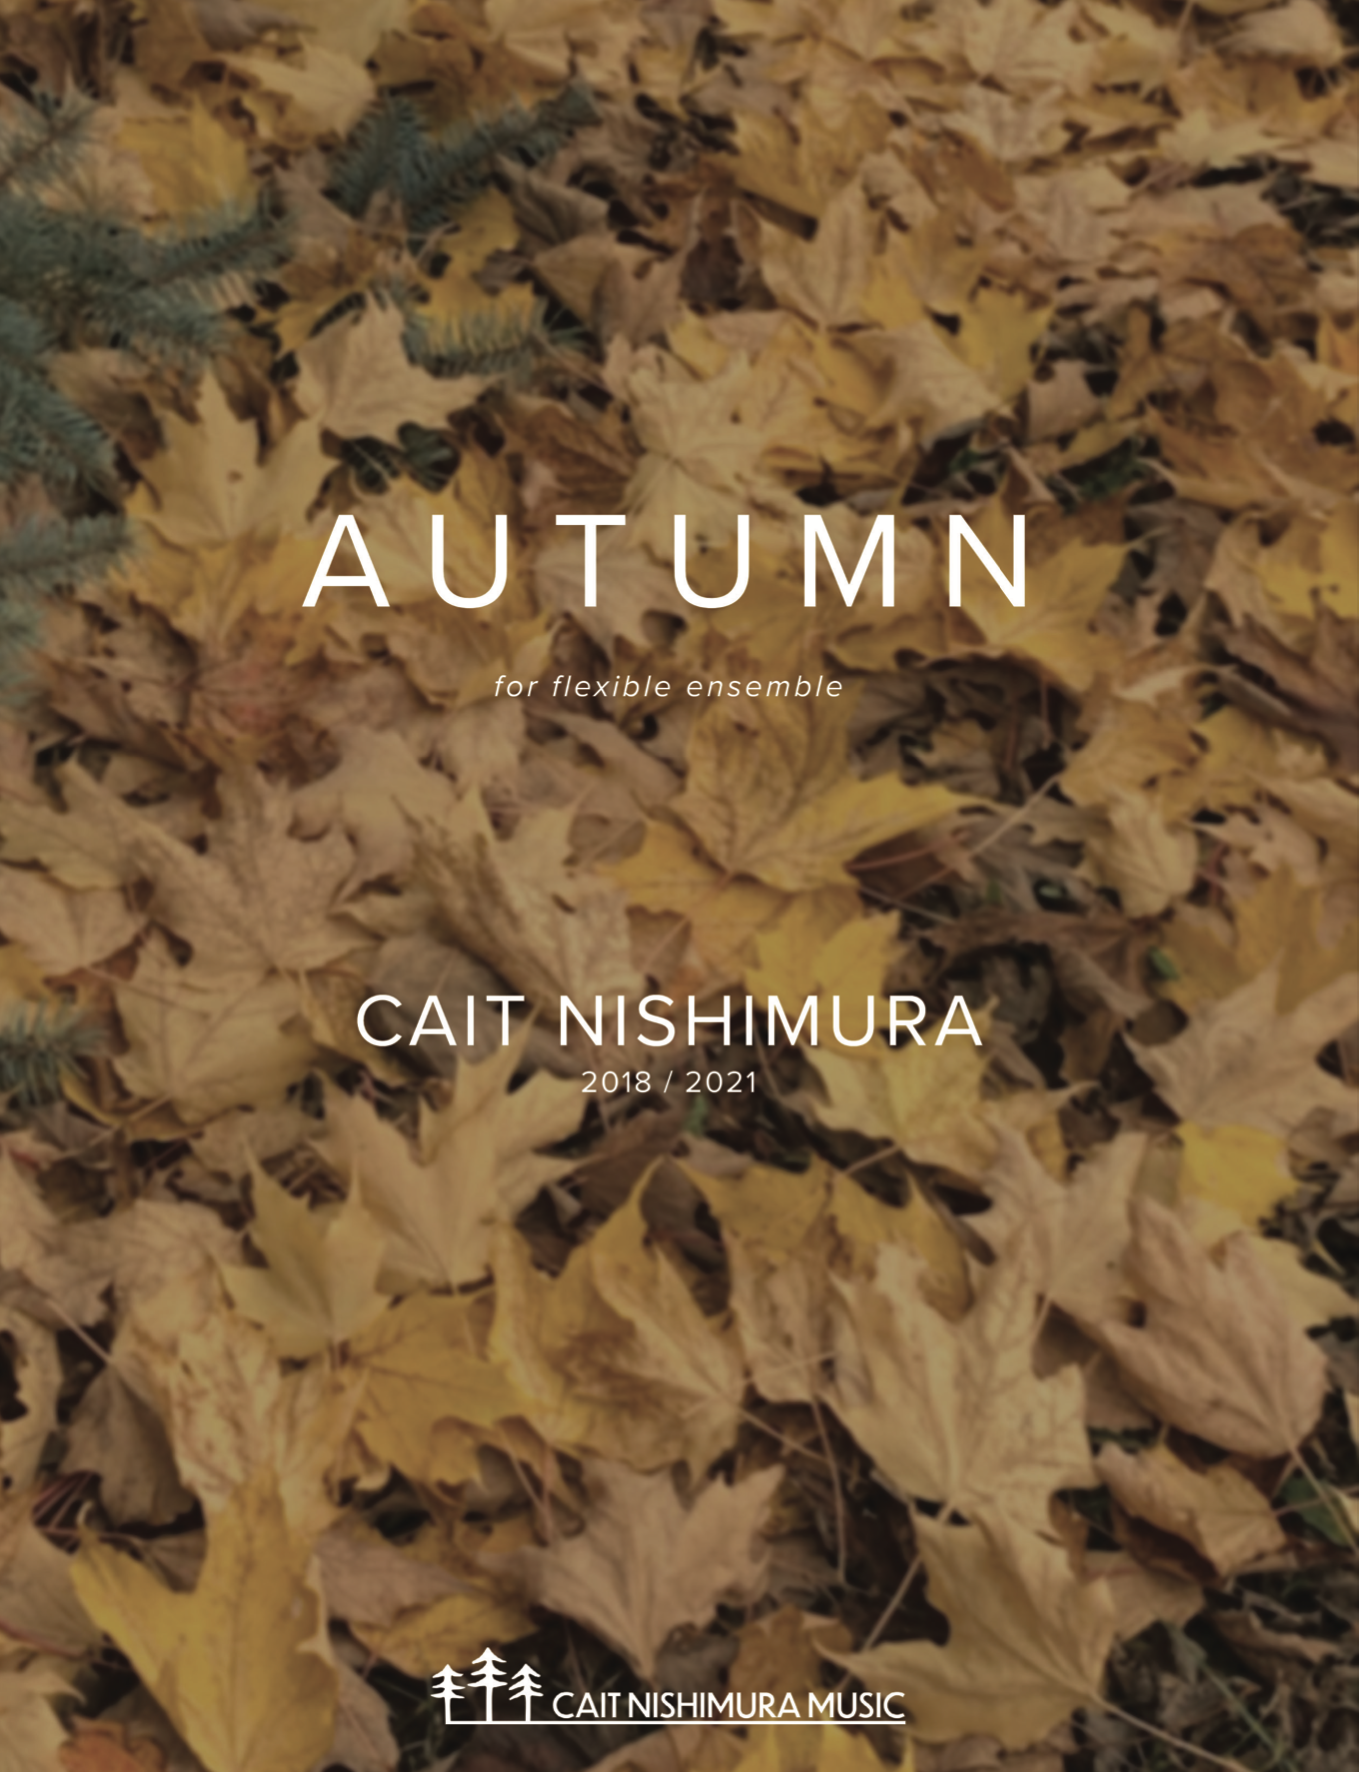 Autumn (Flex Version) by Cait Nishimura